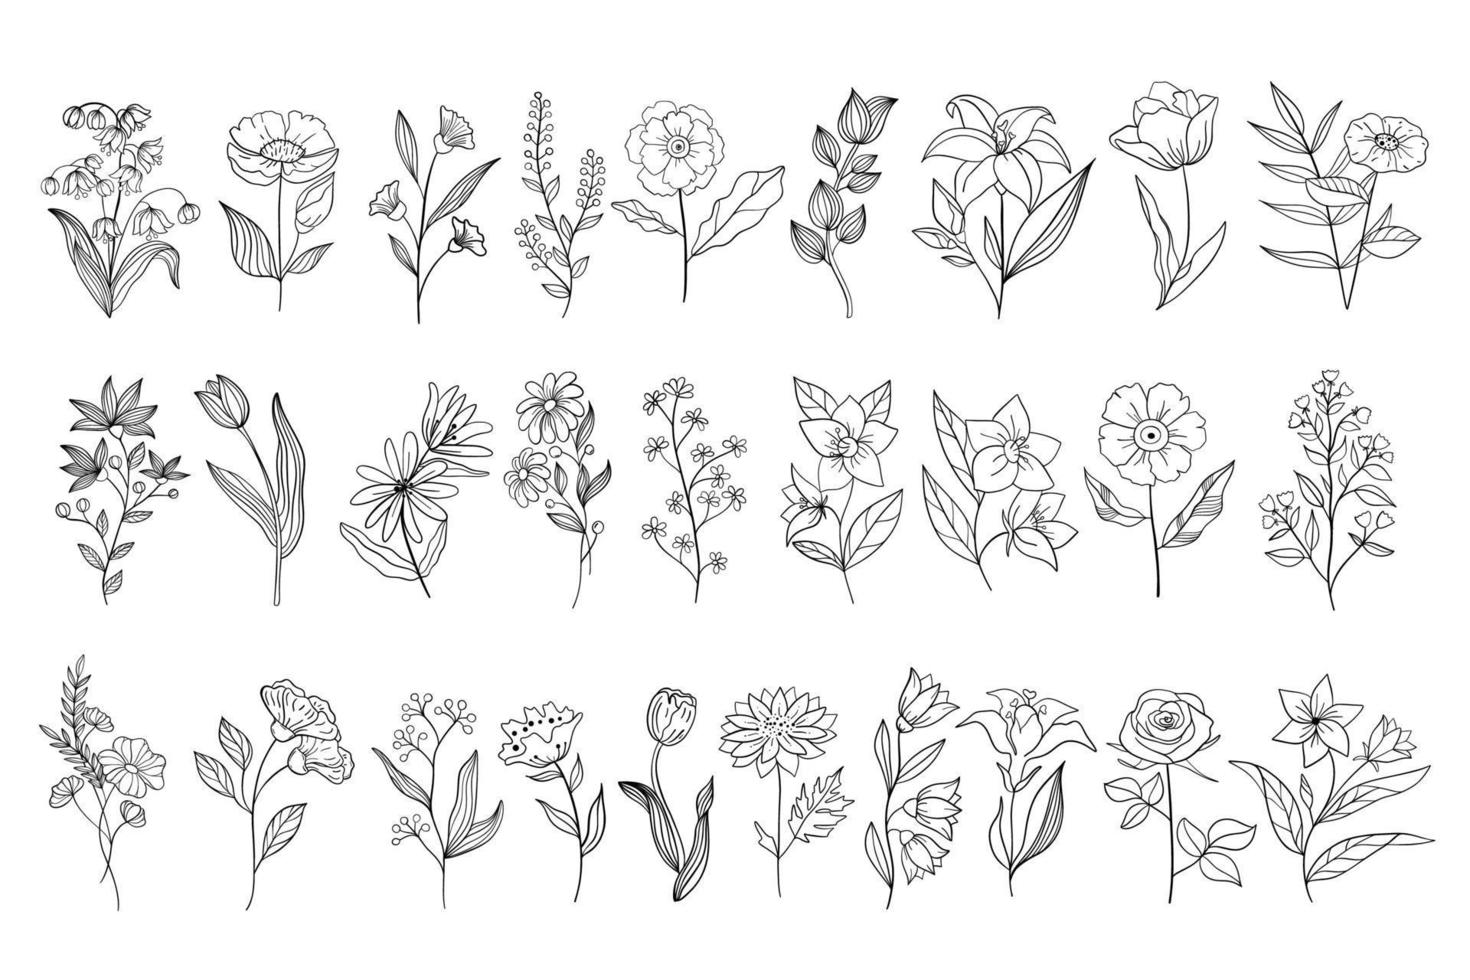 définir l'herbe bouclée dessinée à la main et les fleurs sur fond blanc isolé. illustration botanique. image florale décorative. vecteur